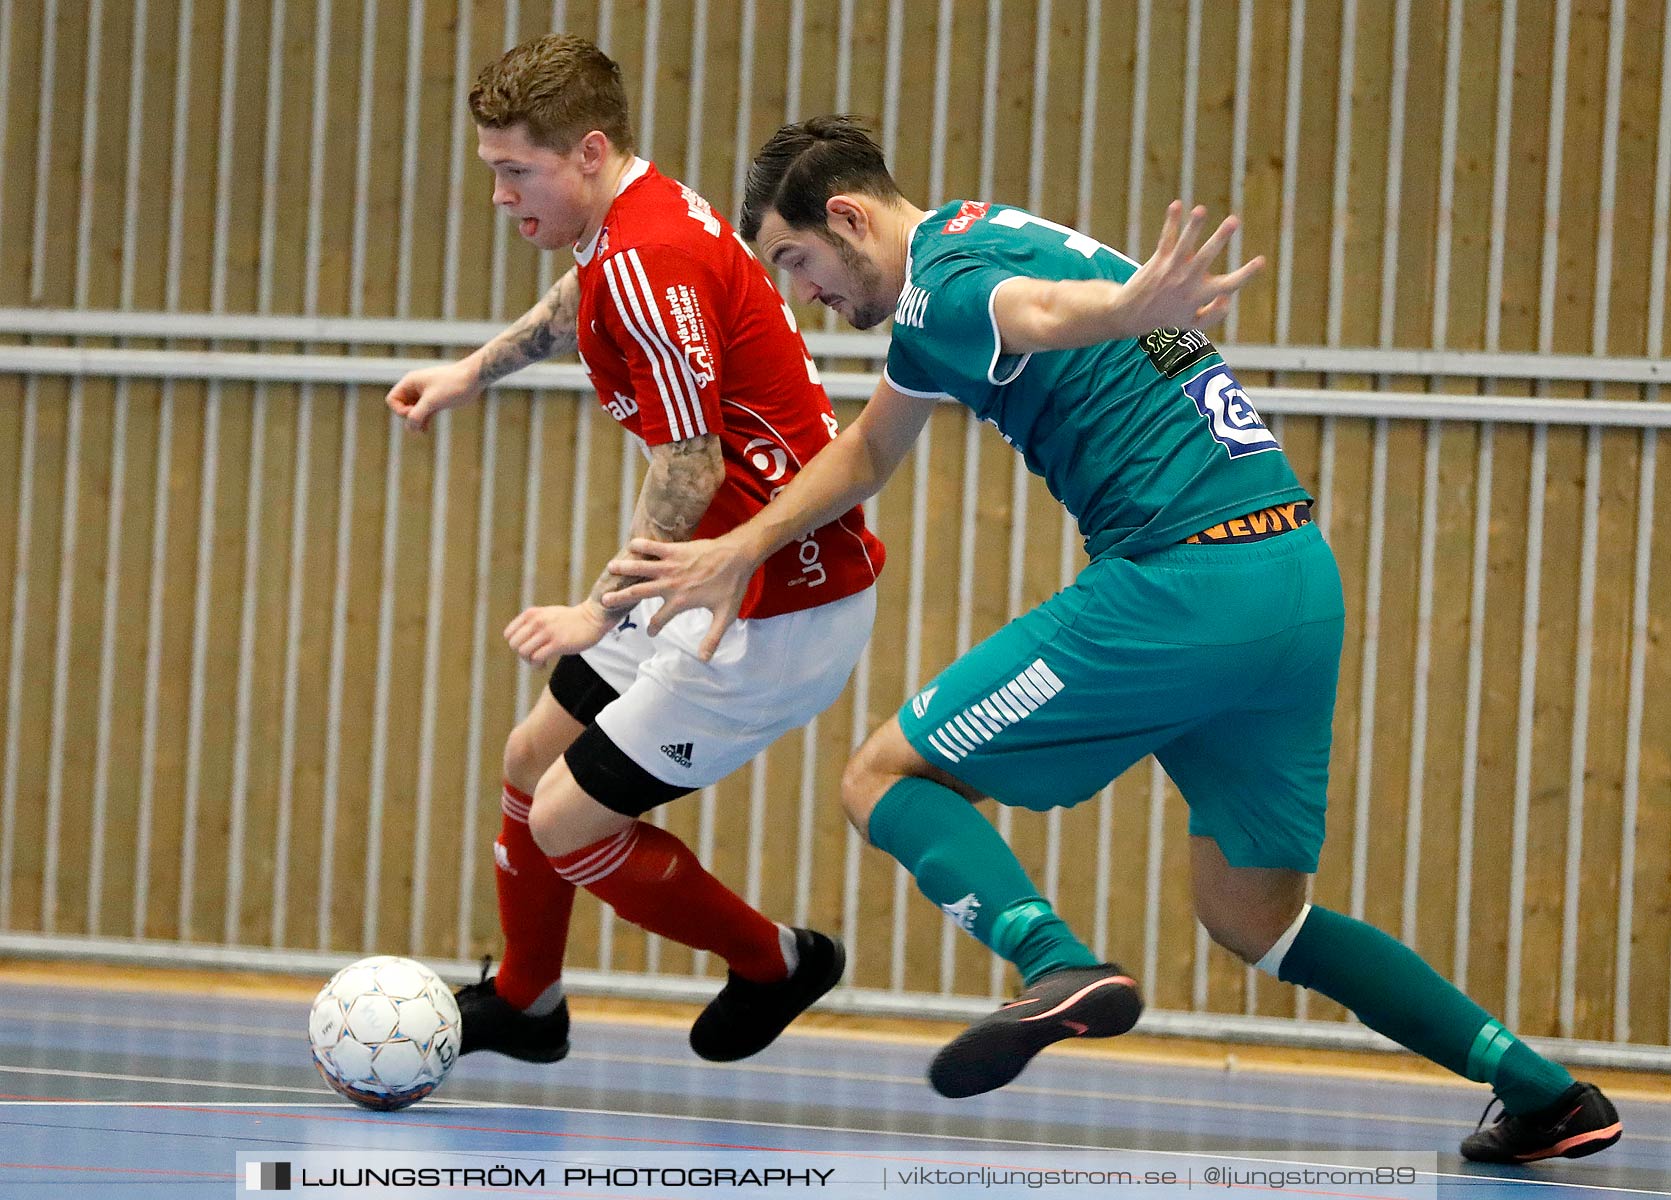 Skövde Futsalcup 2019 Herrar Vårgårda IK-Våmbs IF,herr,Arena Skövde,Skövde,Sverige,Futsal,,2019,227266